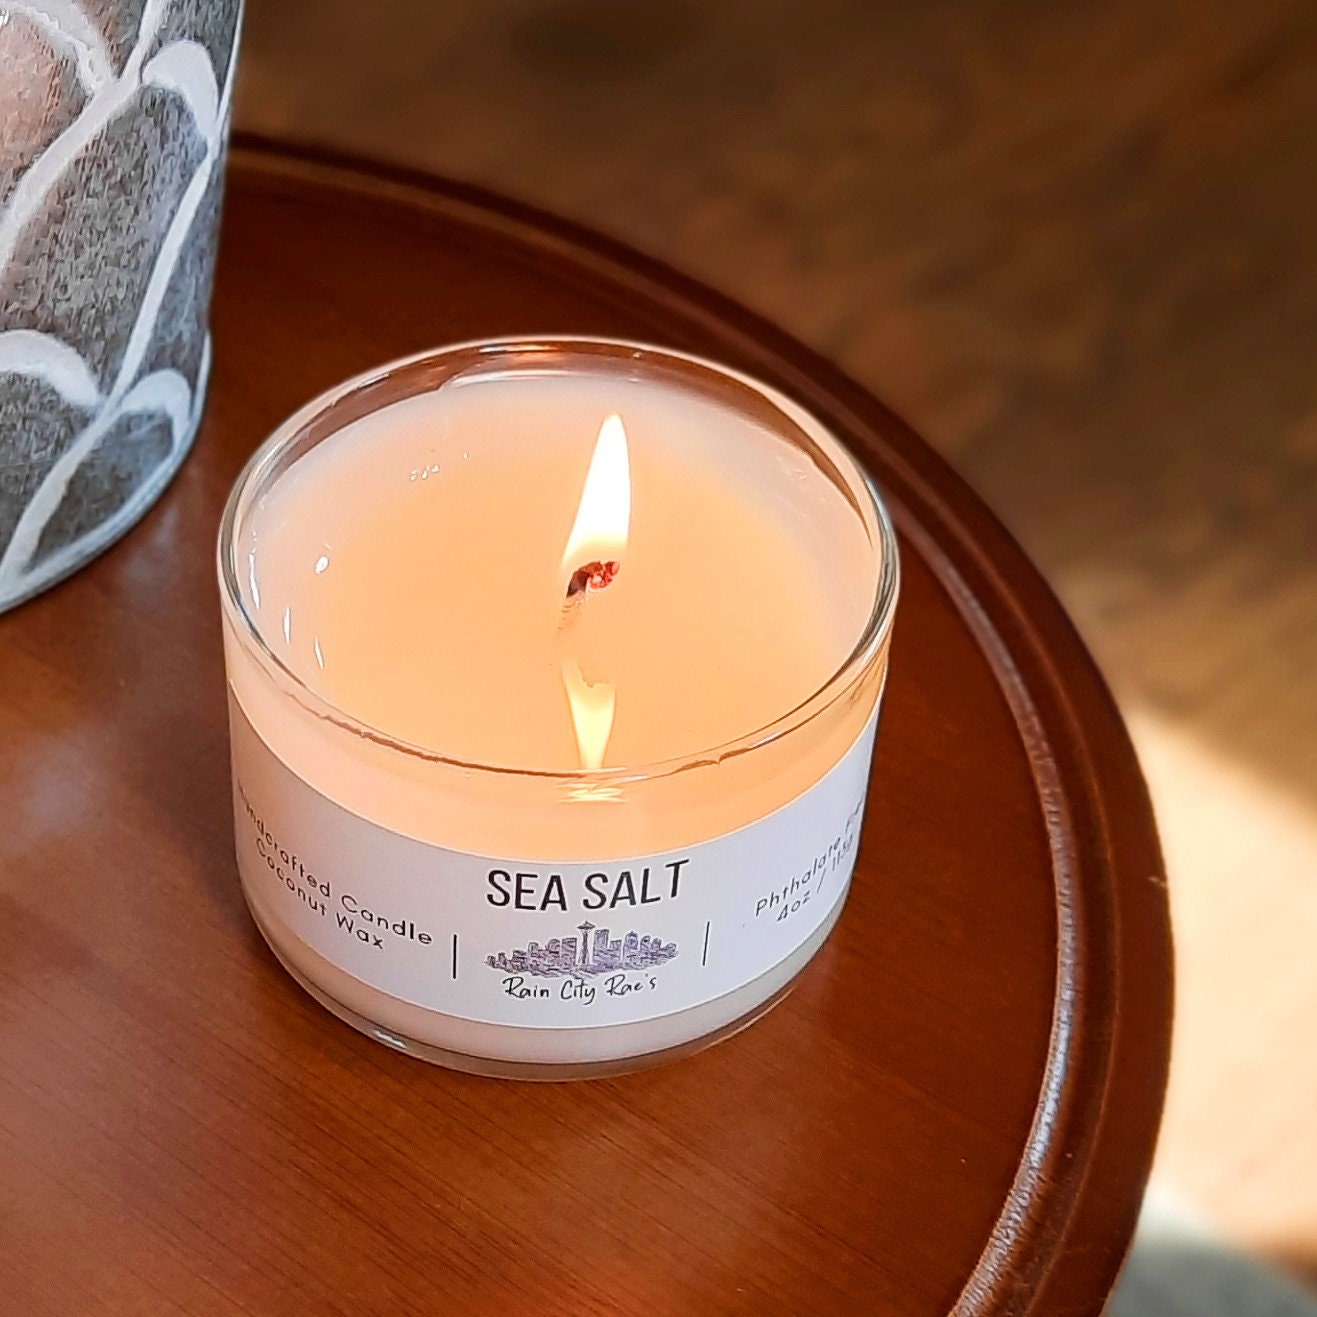 Sea Salt 4 oz Petite Candle